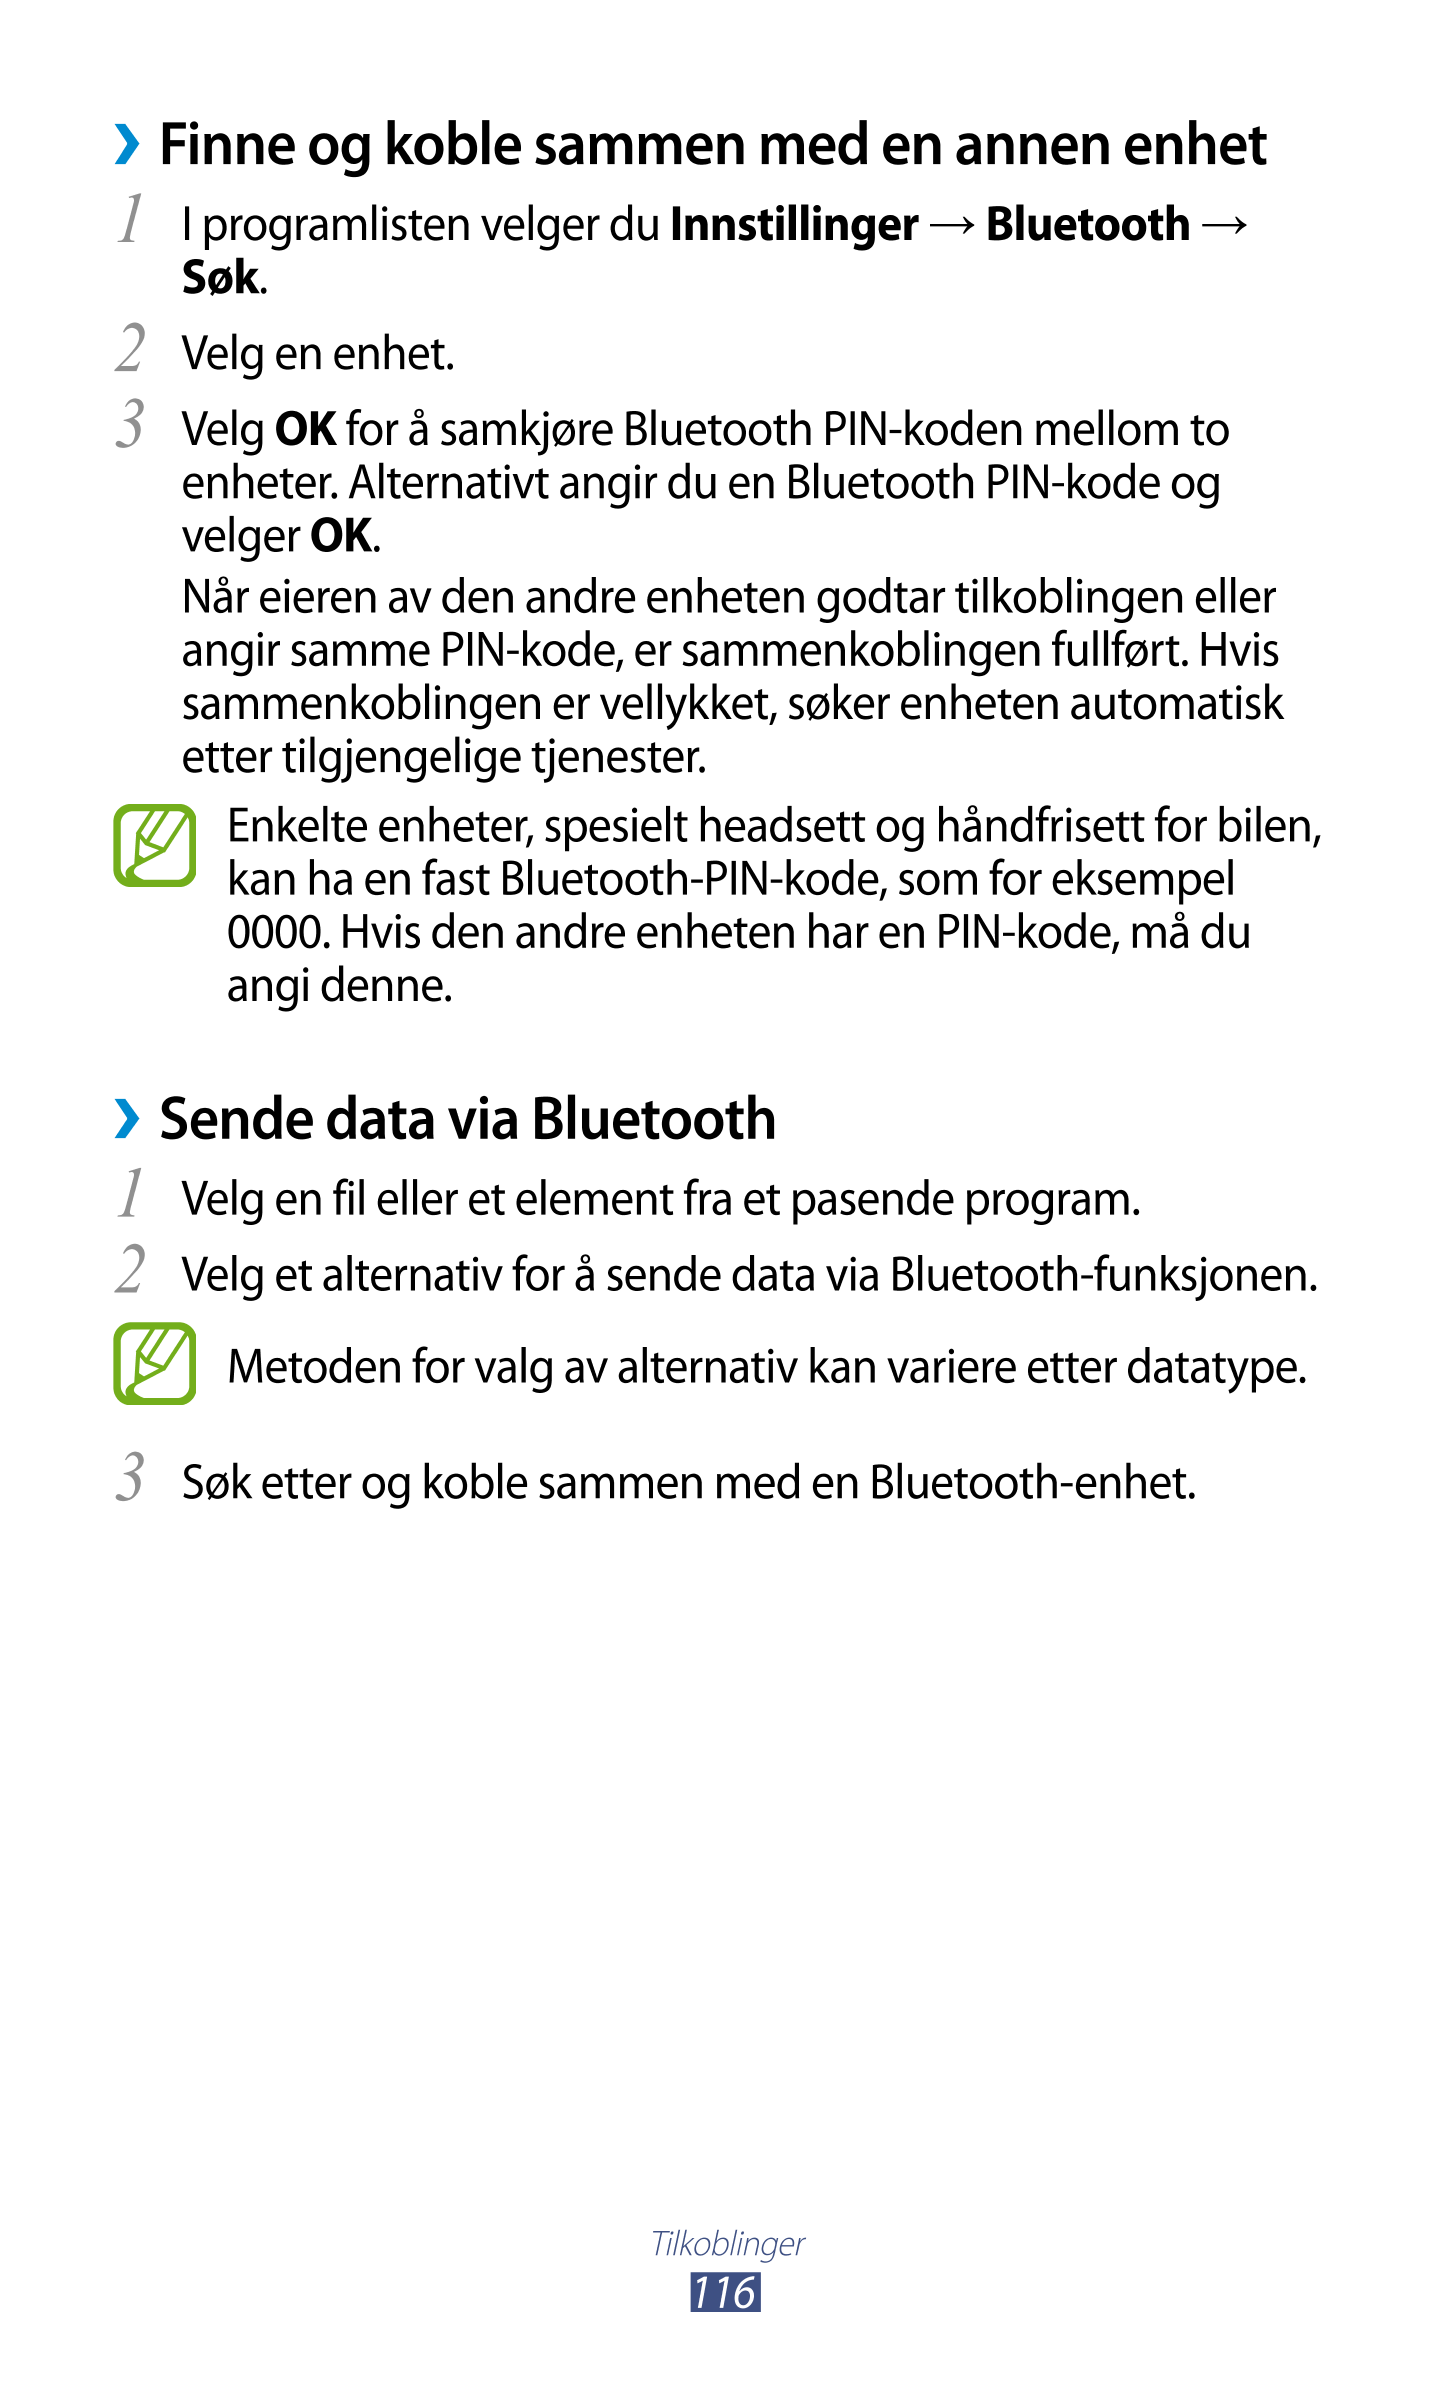 › Finne og koble sammen med en annen enhet
1  I programlisten velger du  Innstillinger  →  Bluetooth  → 
Søk.
2  Velg en enhet.
